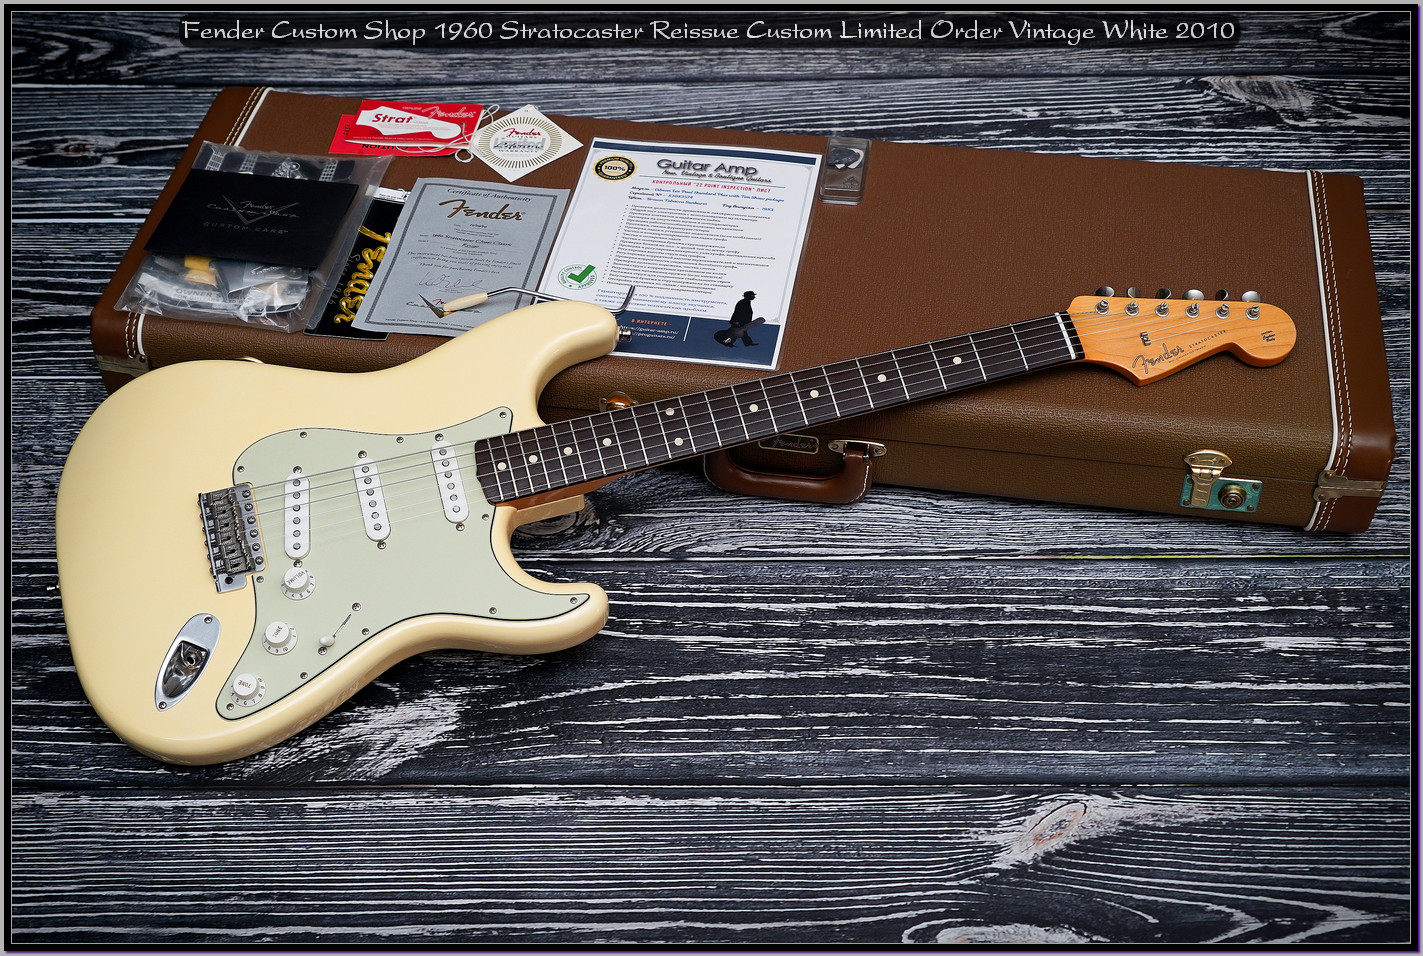 Fender Custom Shop 1960 Stratocaster Reissue Custom Limited Order Vintage White 2010 07_x1400.jpg